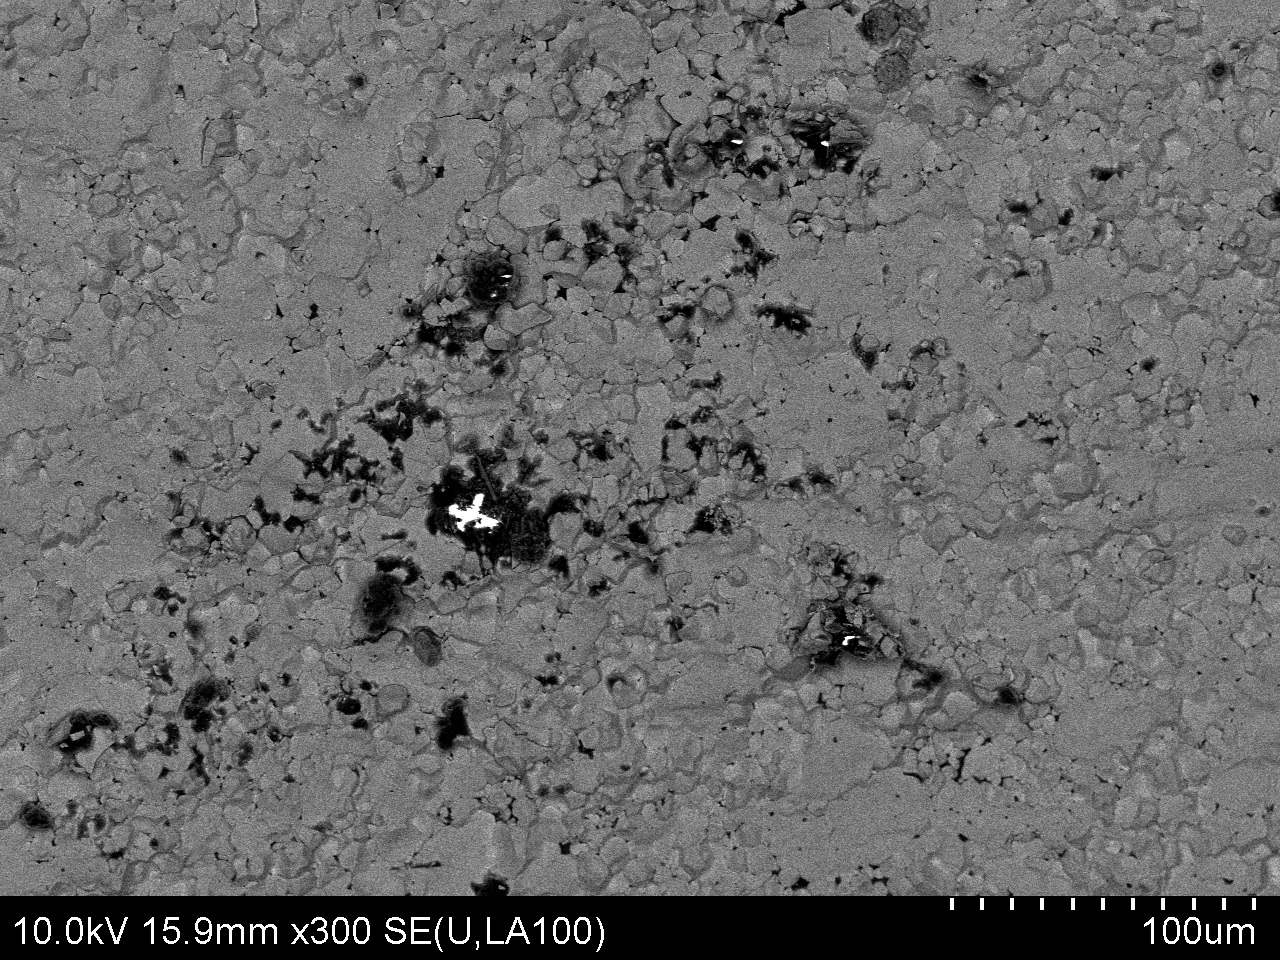 SEM image of dendrite formation.